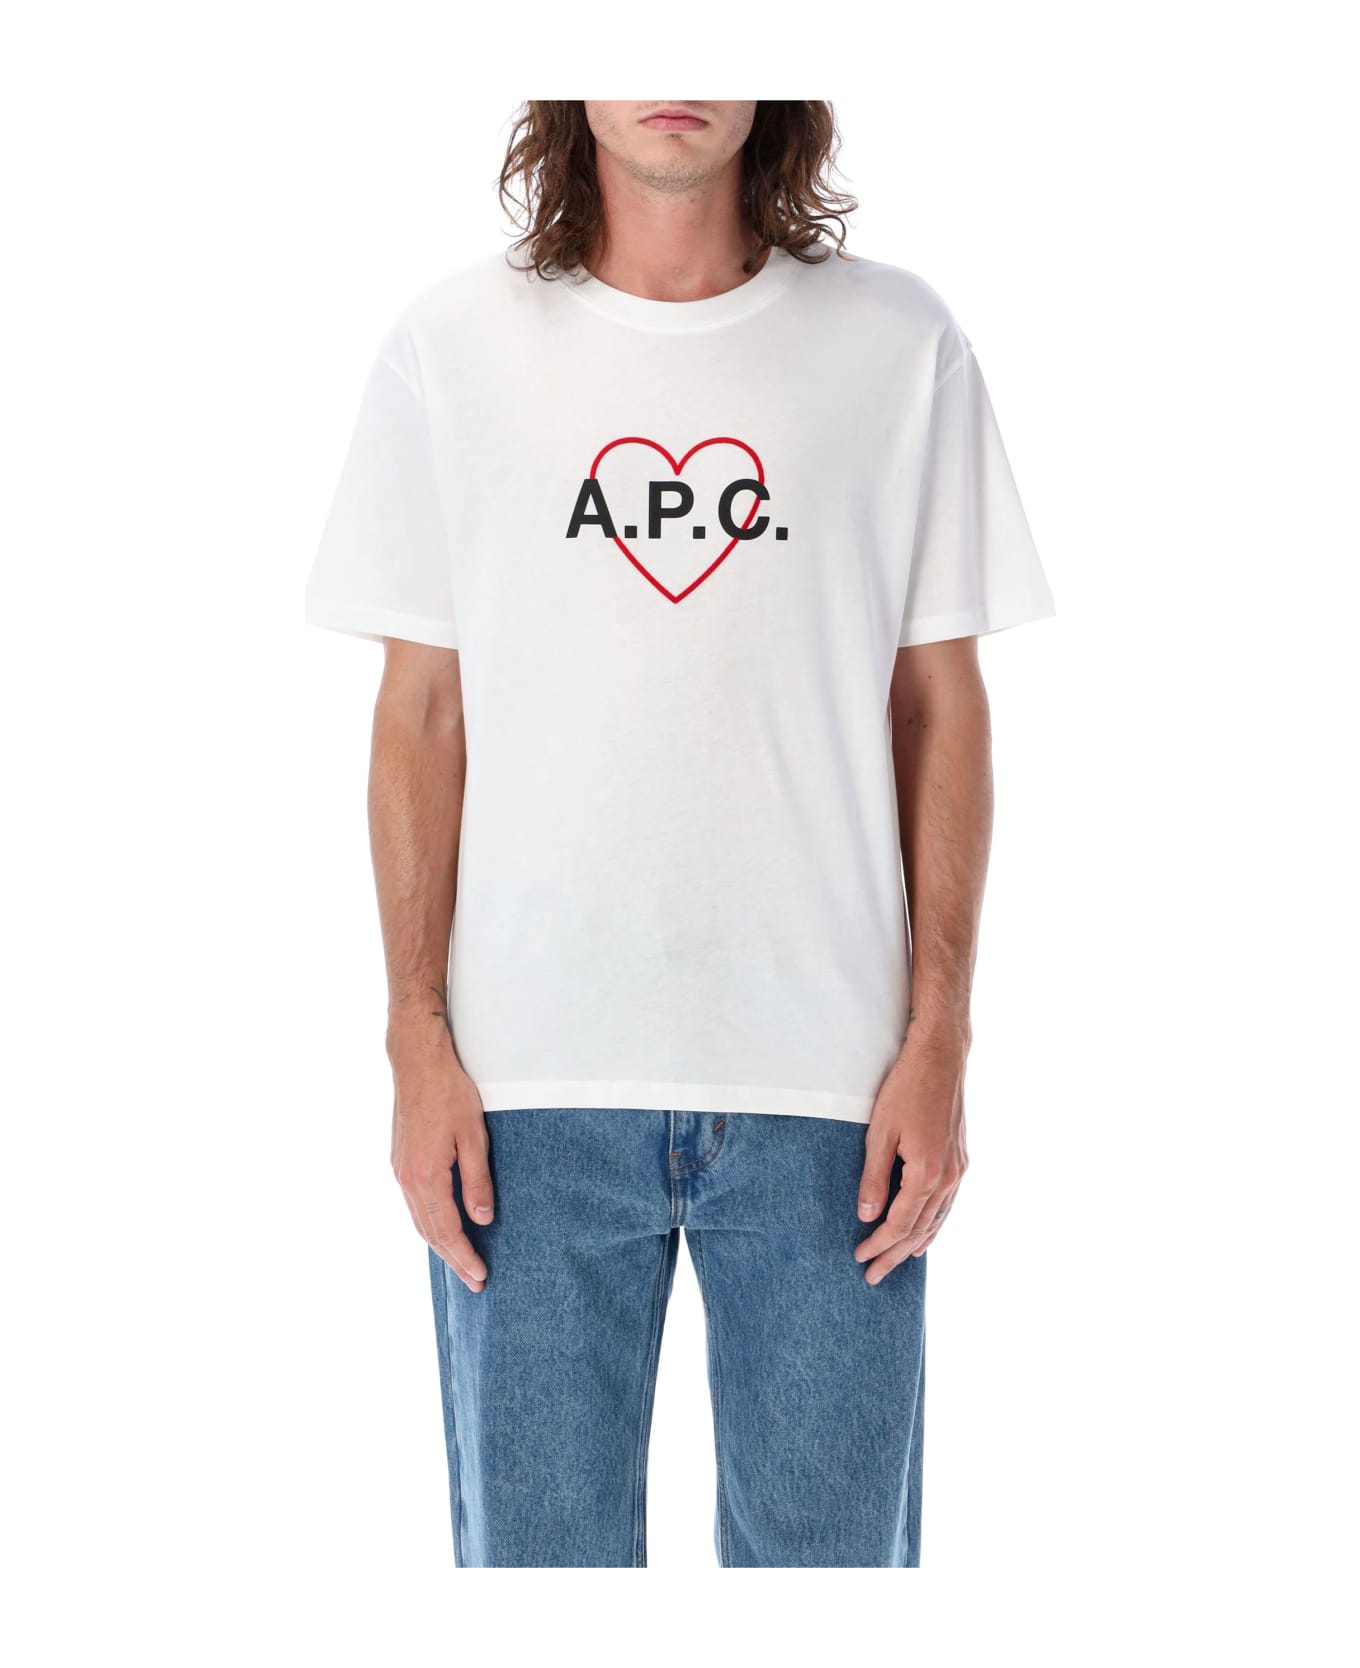 A.P.C. Valentin T-shirt - WHITE